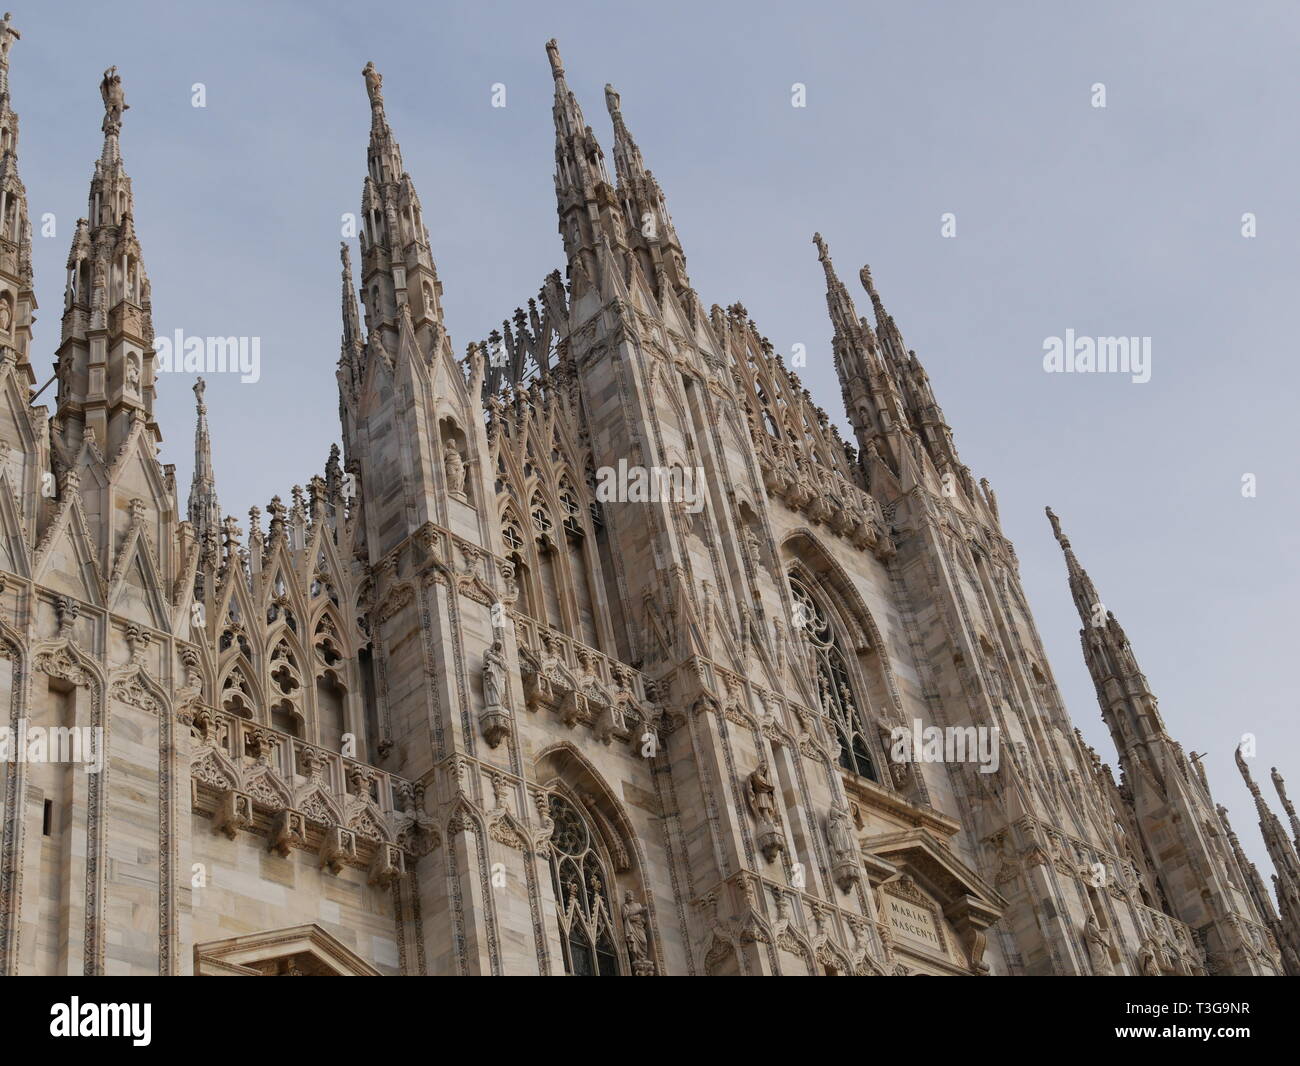 Catedral de Milán con torres góticas Foto de stock